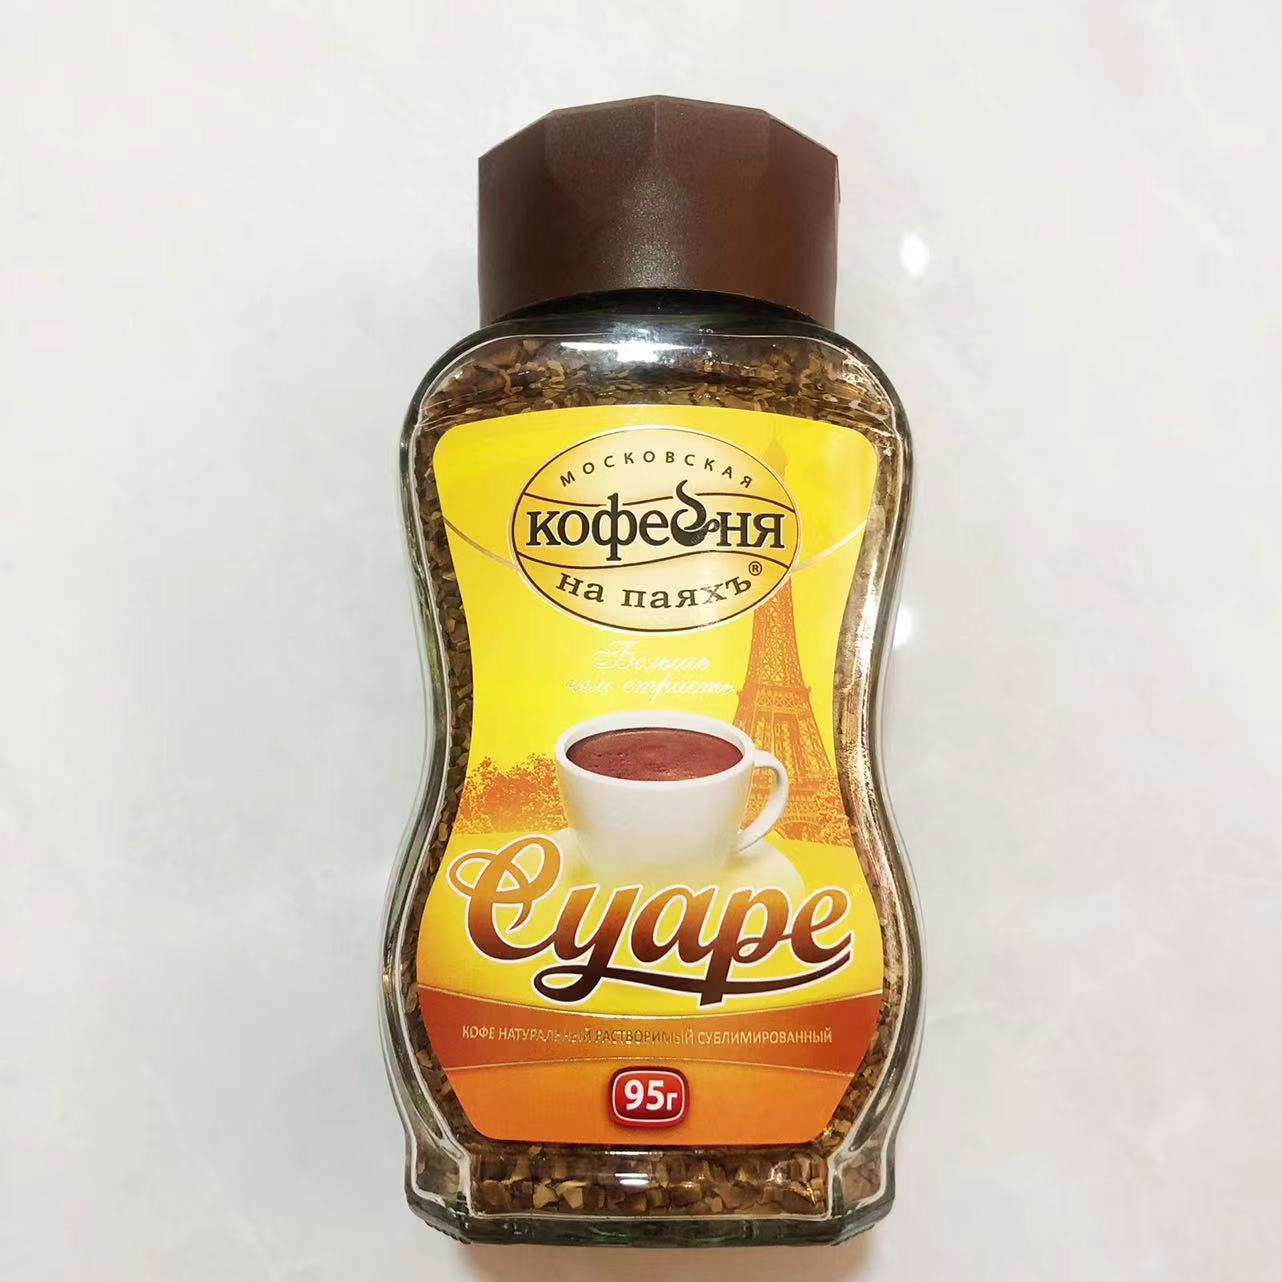 俄罗斯咖啡原装进口速溶低脂无添加黑咖啡纯咖啡苦咖啡